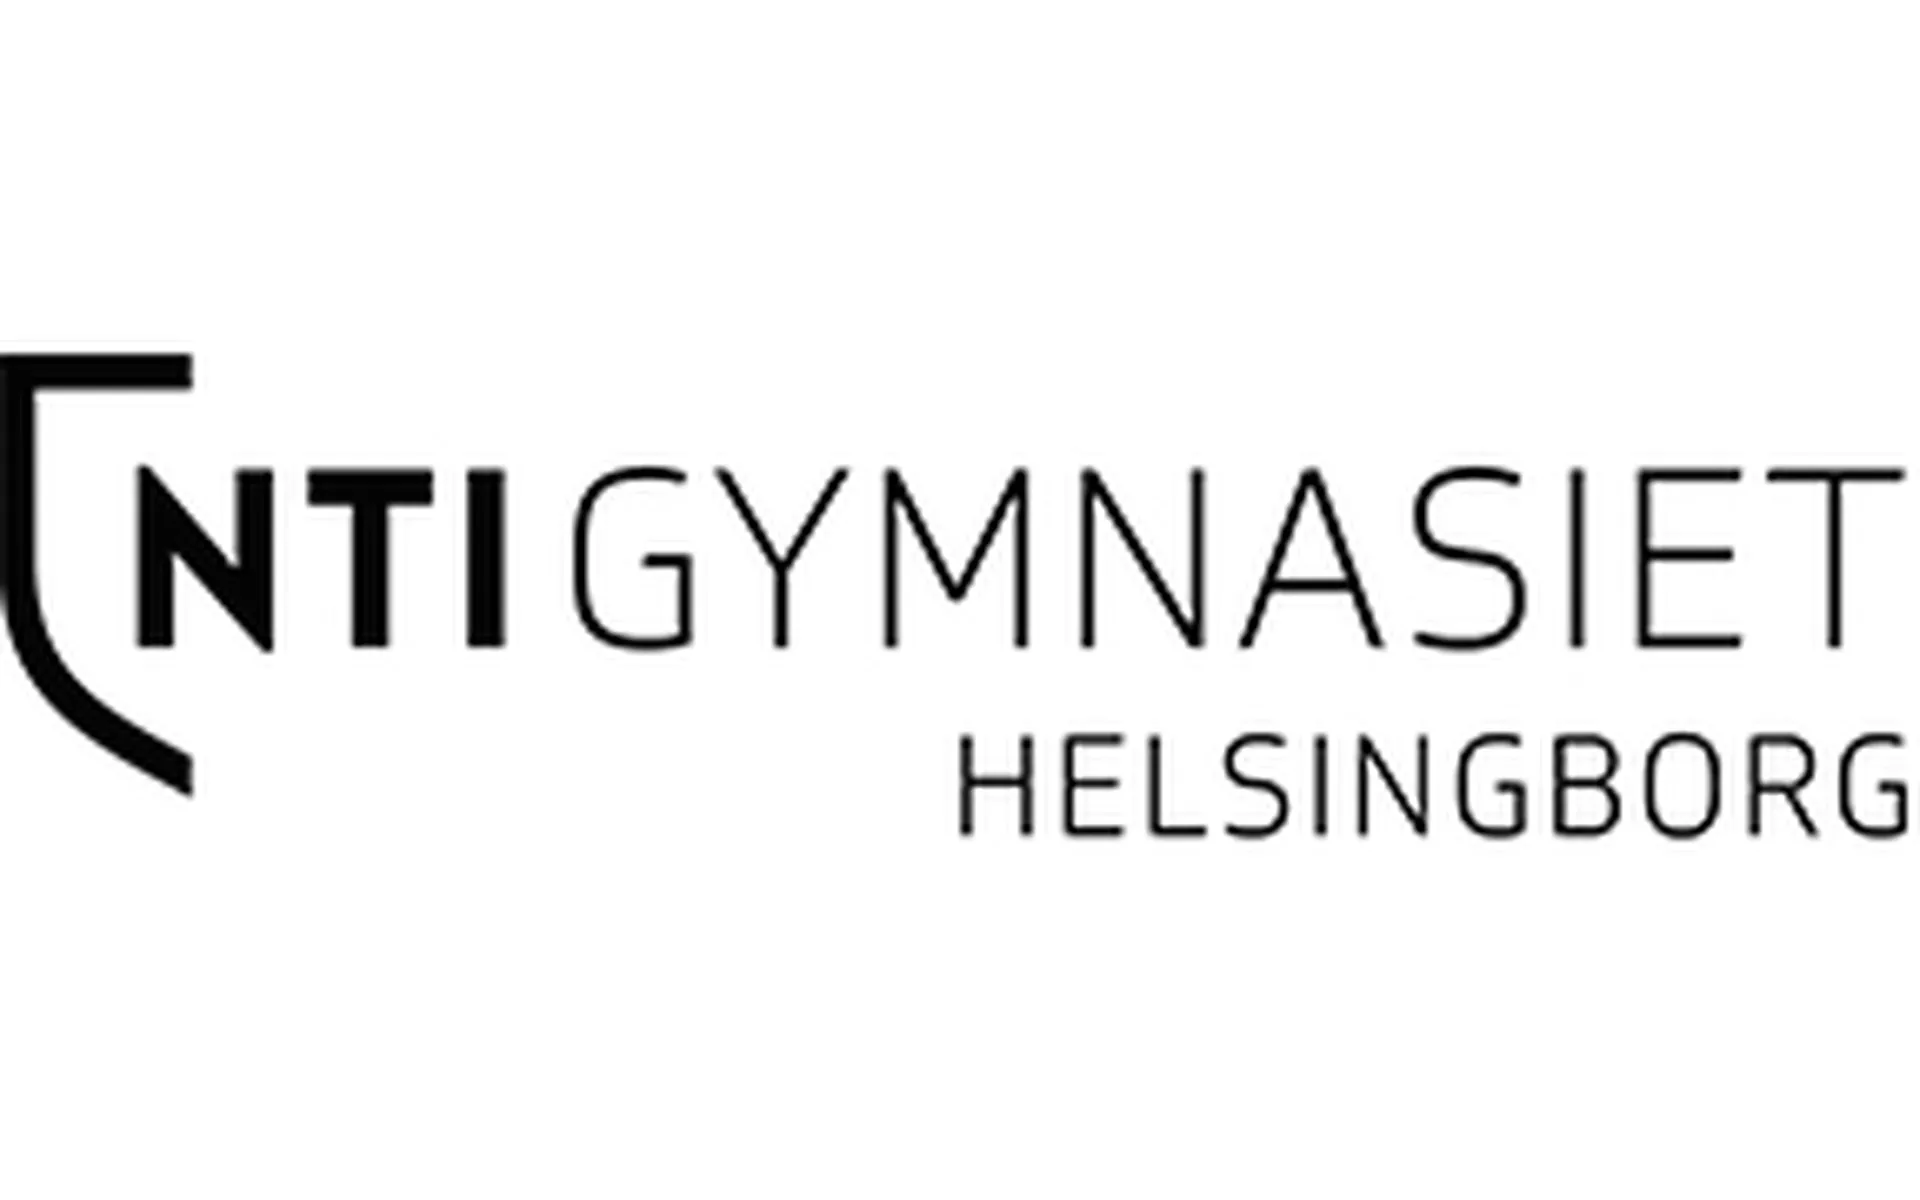 NTI Gymnasiet Helsingborg